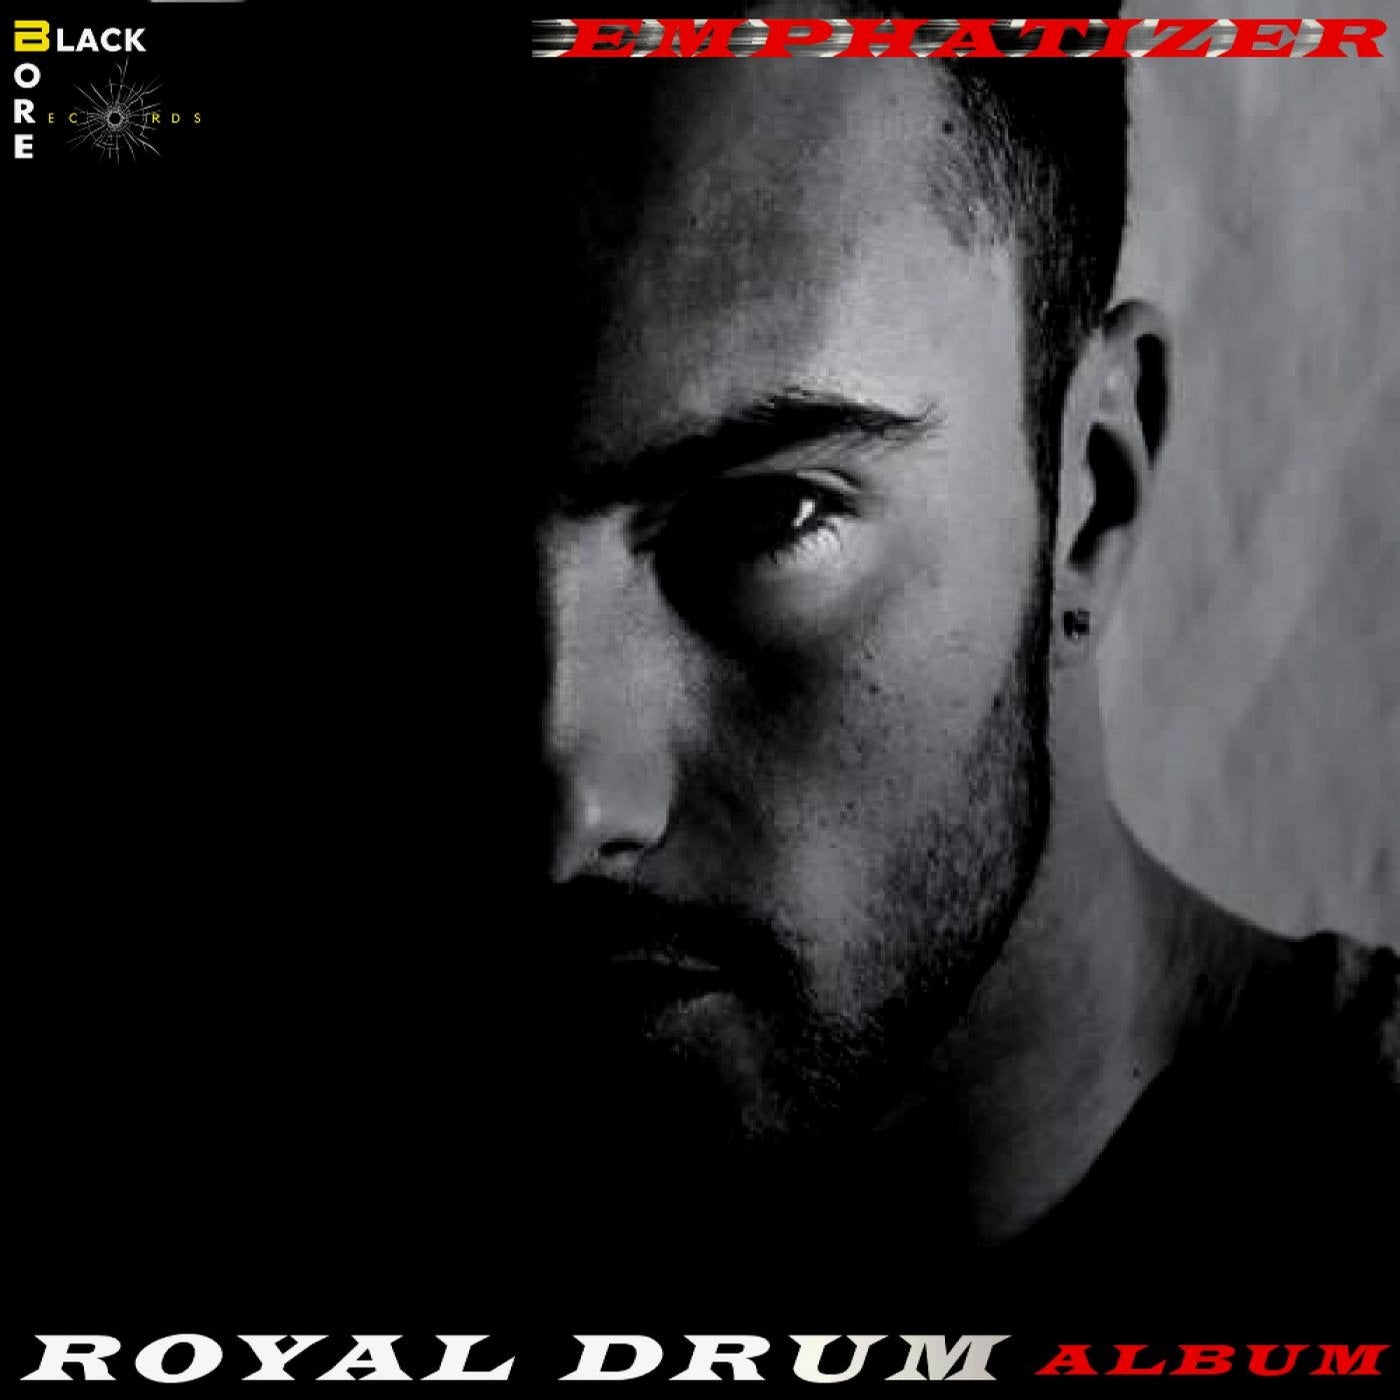 Royal Drum - Album